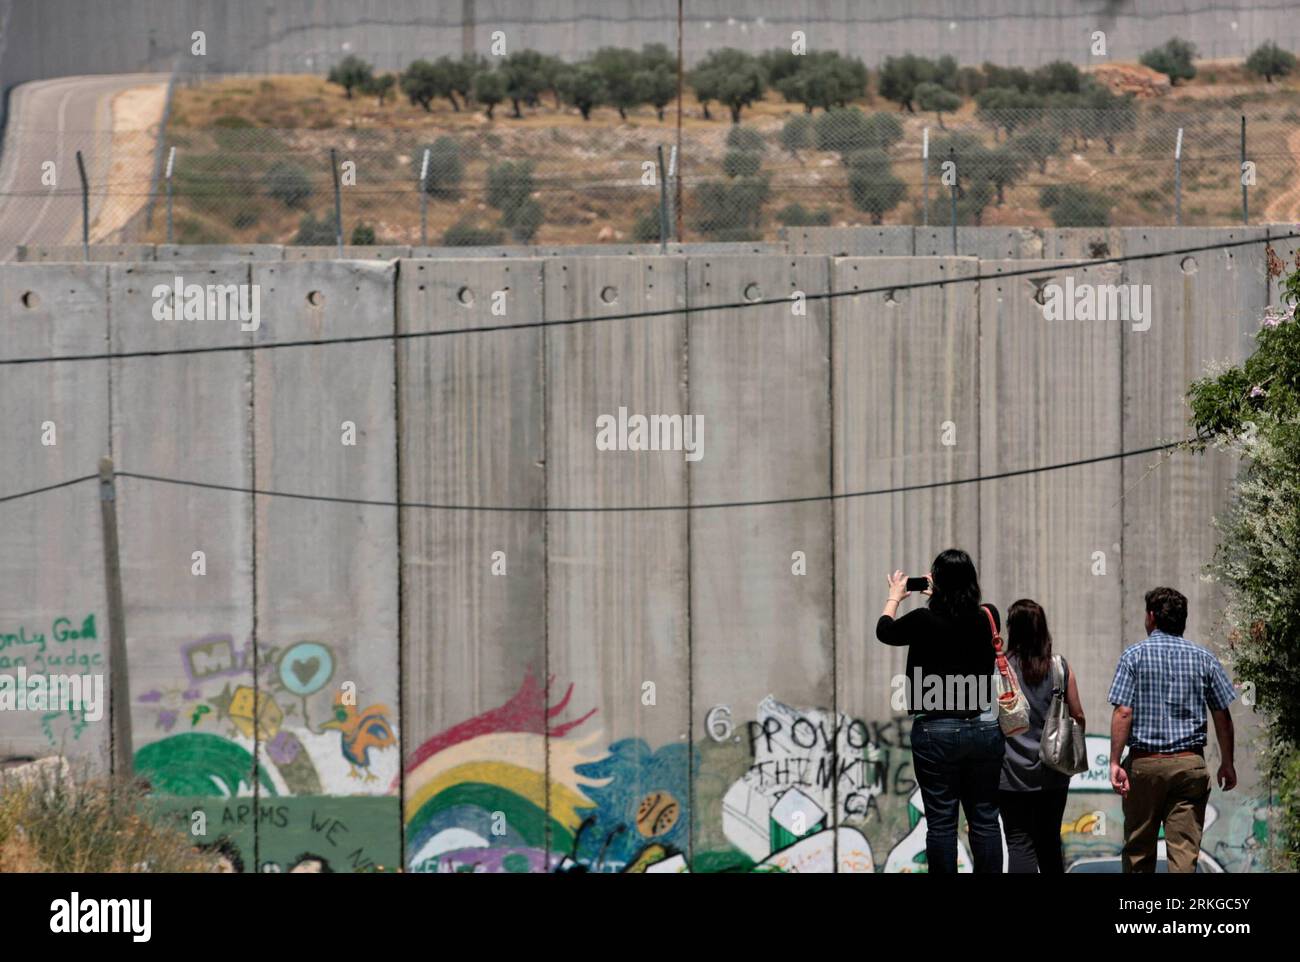 Bildnummer : 55578699 Datum : 08.07.2011 Copyright : imago/Xinhua (110708)-- CISJORDANIE, 8 JUILLET 2011 (Xinhua) -- des touristes étrangers prennent des photos d'une section du mur de séparation controversé israélien dans la ville de Bethléem en Cisjordanie le 8 juillet 2011. Les Palestiniens marqueront samedi le septième anniversaire de la décision de la Cour internationale de Justice à la Haye, le 9 juillet 2004, qui a qualifié la barrière de séparation israélienne en cours de construction autour de la Cisjordanie d’illégale et devrait être supprimée. (Xinhua/Luay Sababa) MIDEAST-CISJORDANIE-BARRIÈRE DE SÉPARATION ISRAÉLIENNE PUBLICATIONxNOTxINxCHN Gesell Banque D'Images